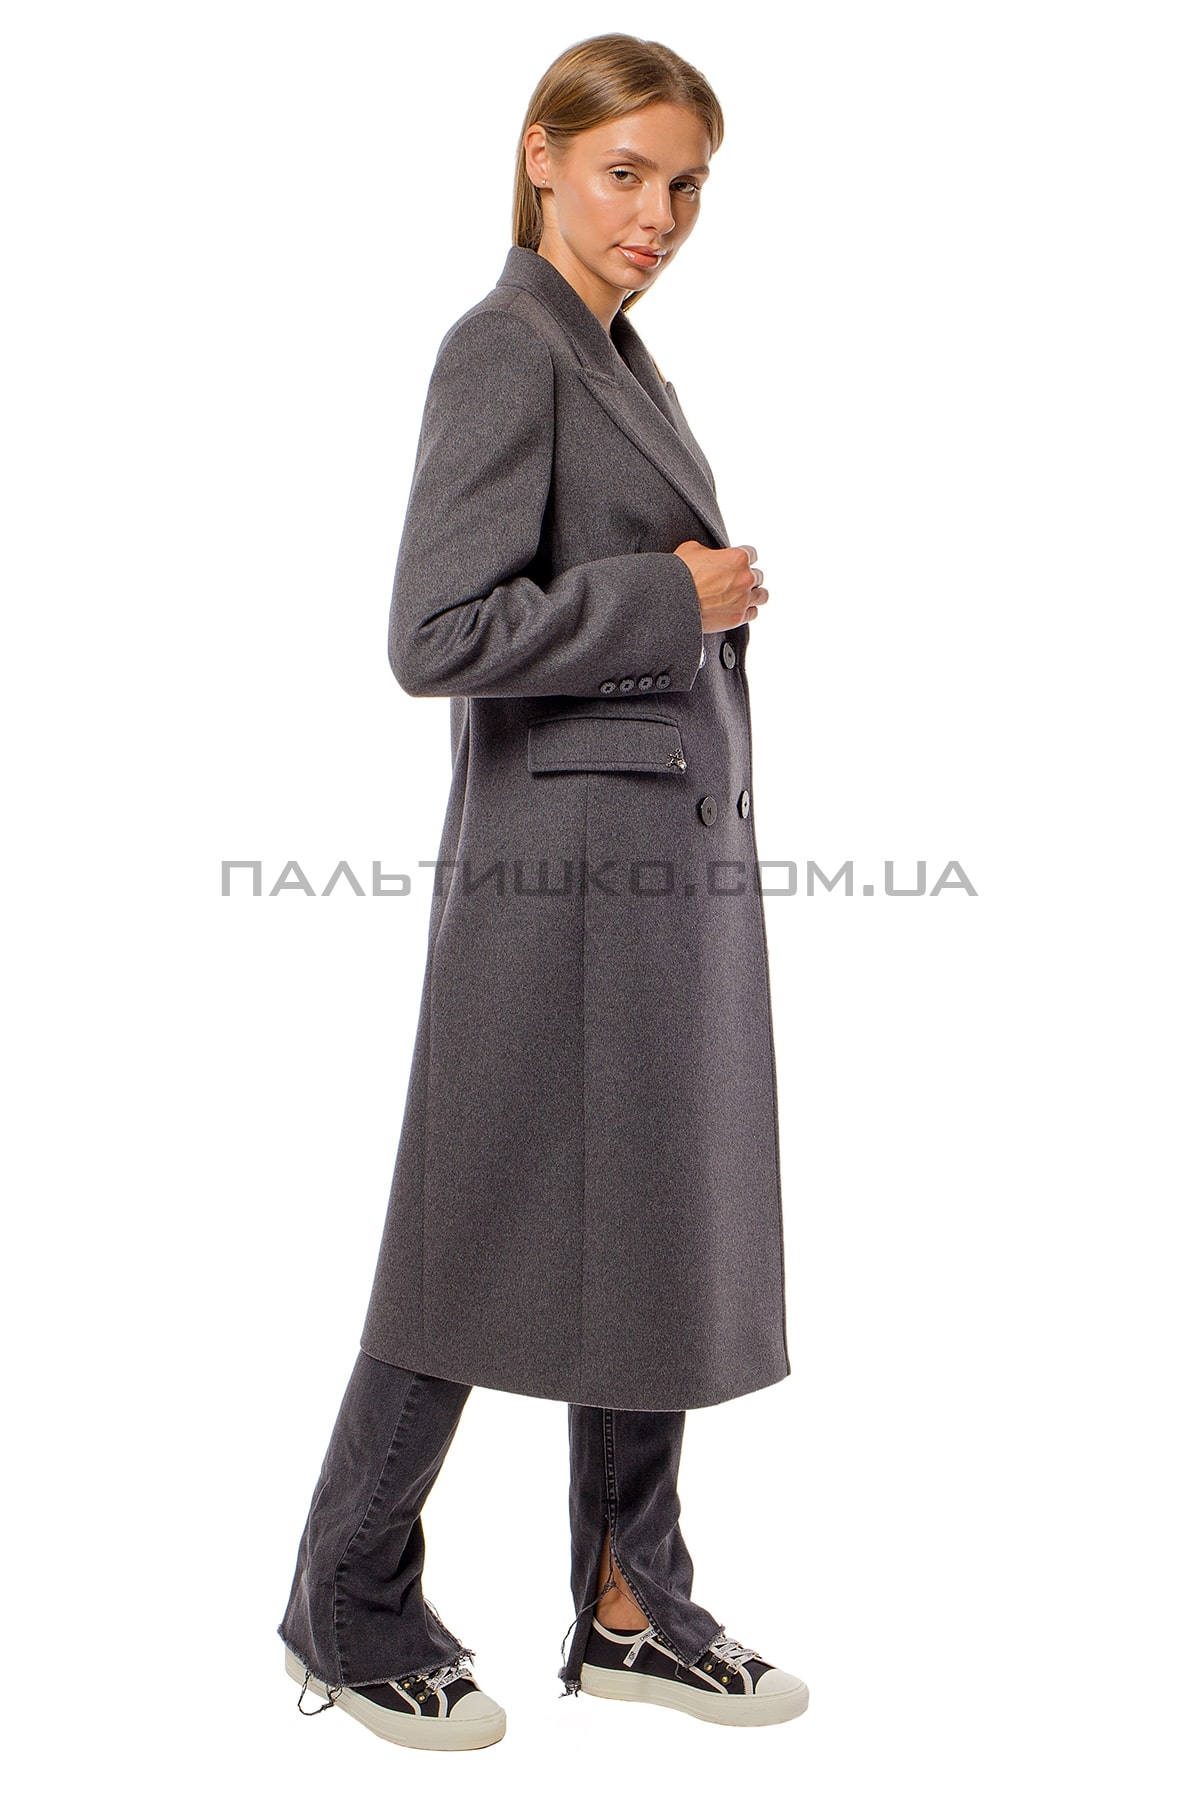  Женское пальто серое